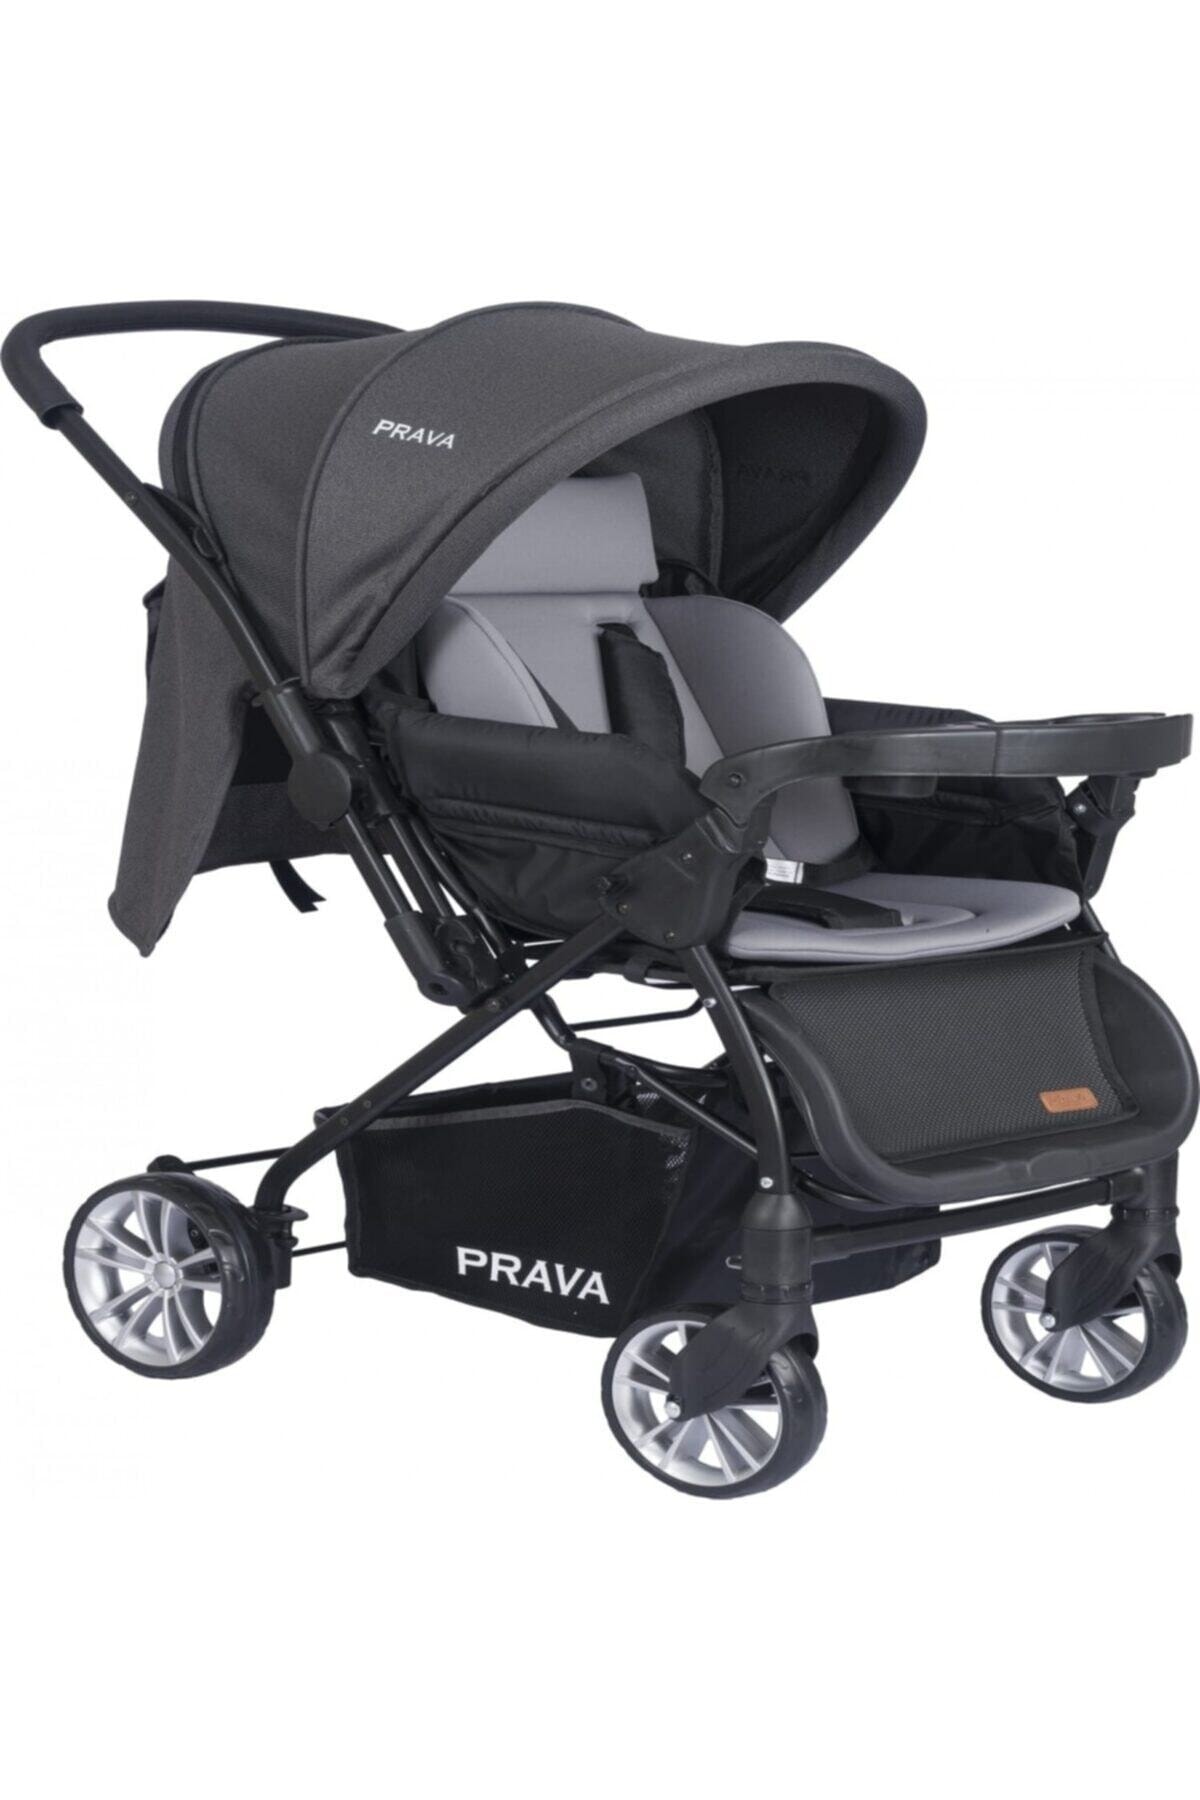 Prava P11 Dream Plus Çift Yönlü Bebek Arabası Siyah Füme